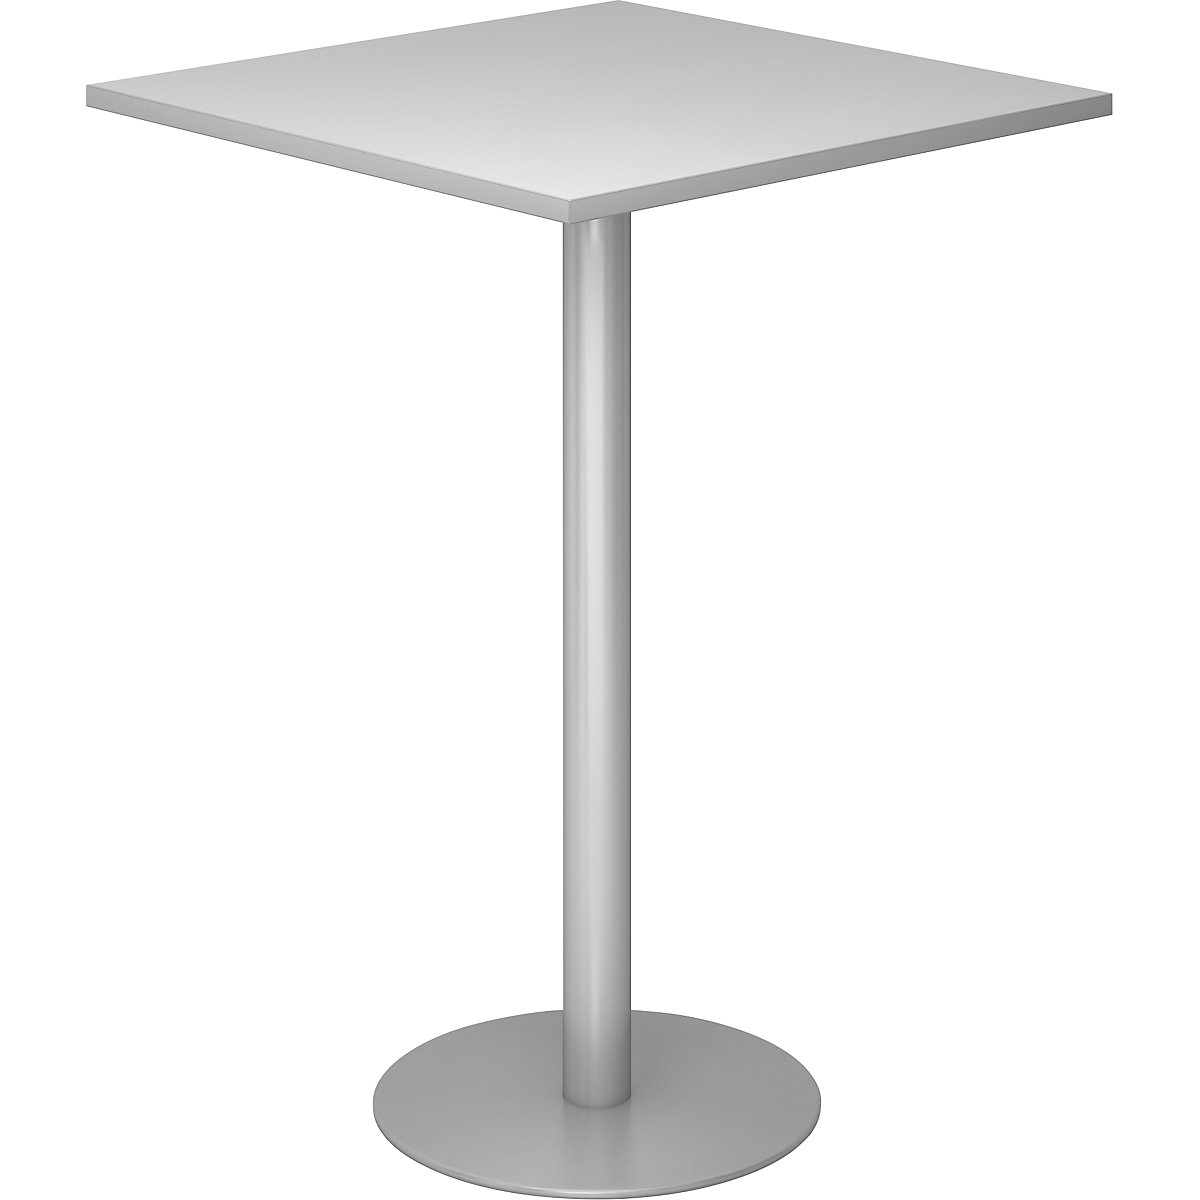 Állóasztal, h x szé 800 x 800 mm, 1116 mm magas, ezüst váz, világosszürke asztallap